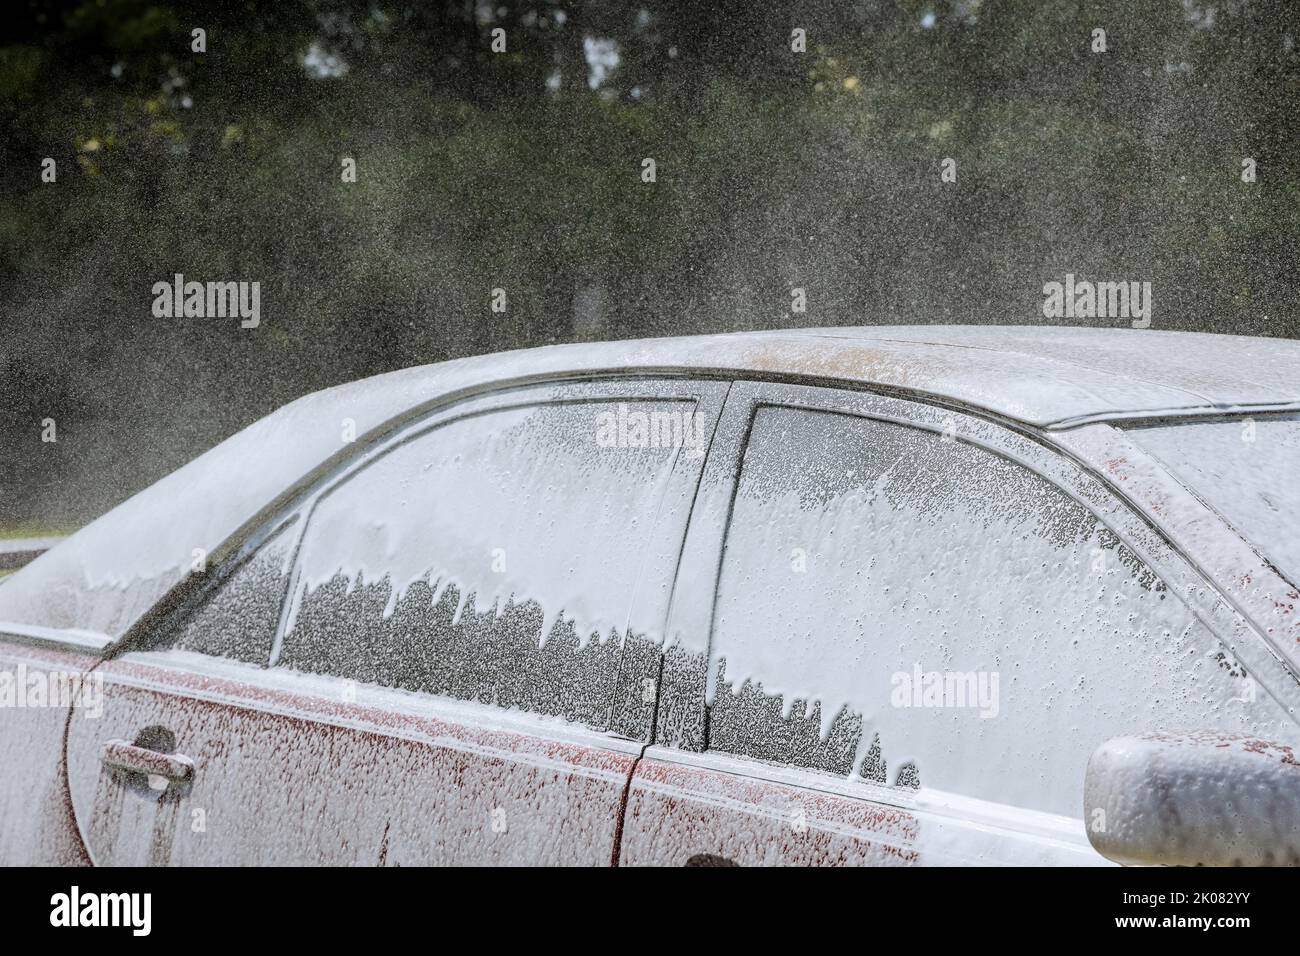 Während des Waschprozesses eines Autos in einer Autowäsche wird ein Power-Wasserstrahl verwendet, um Seifenwasserlösung zu sprühen Stockfoto